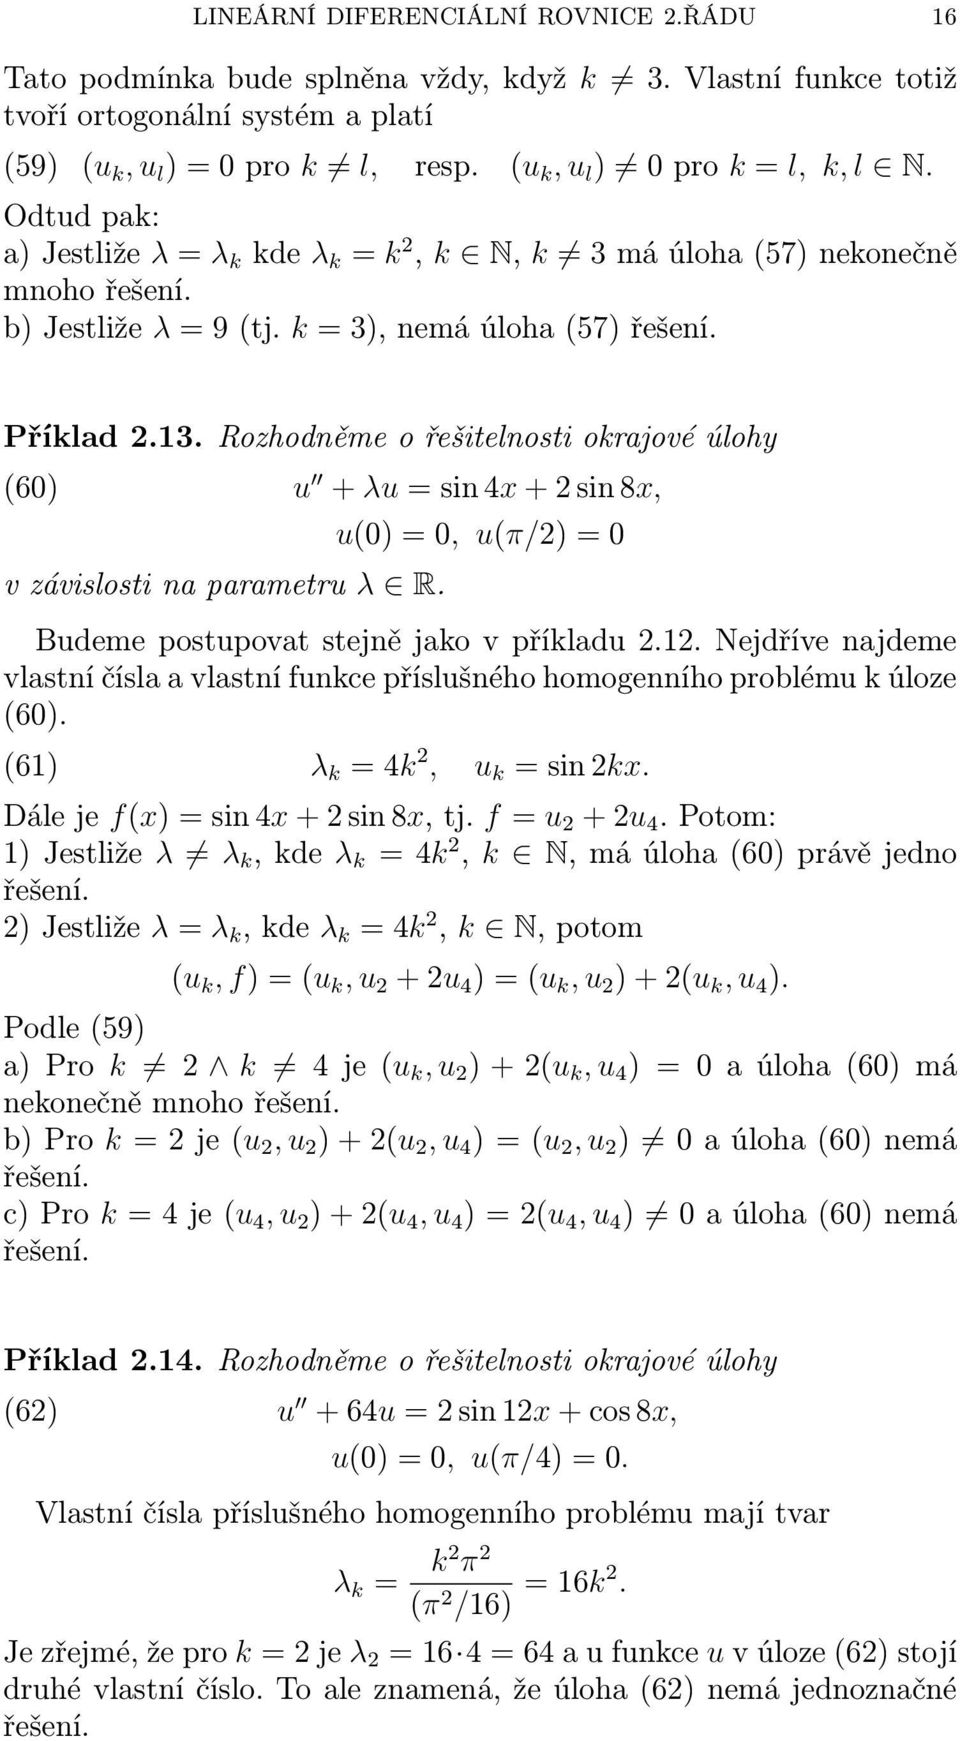 Rozhodněme o řešitelnosti okrjové úlohy (6) v závislosti n prmetru λ R. u + λu = sin 4x + 2 sin 8x, u() =, u(π/2) = Budeme postupovt stejně jko v příkldu 2.12.